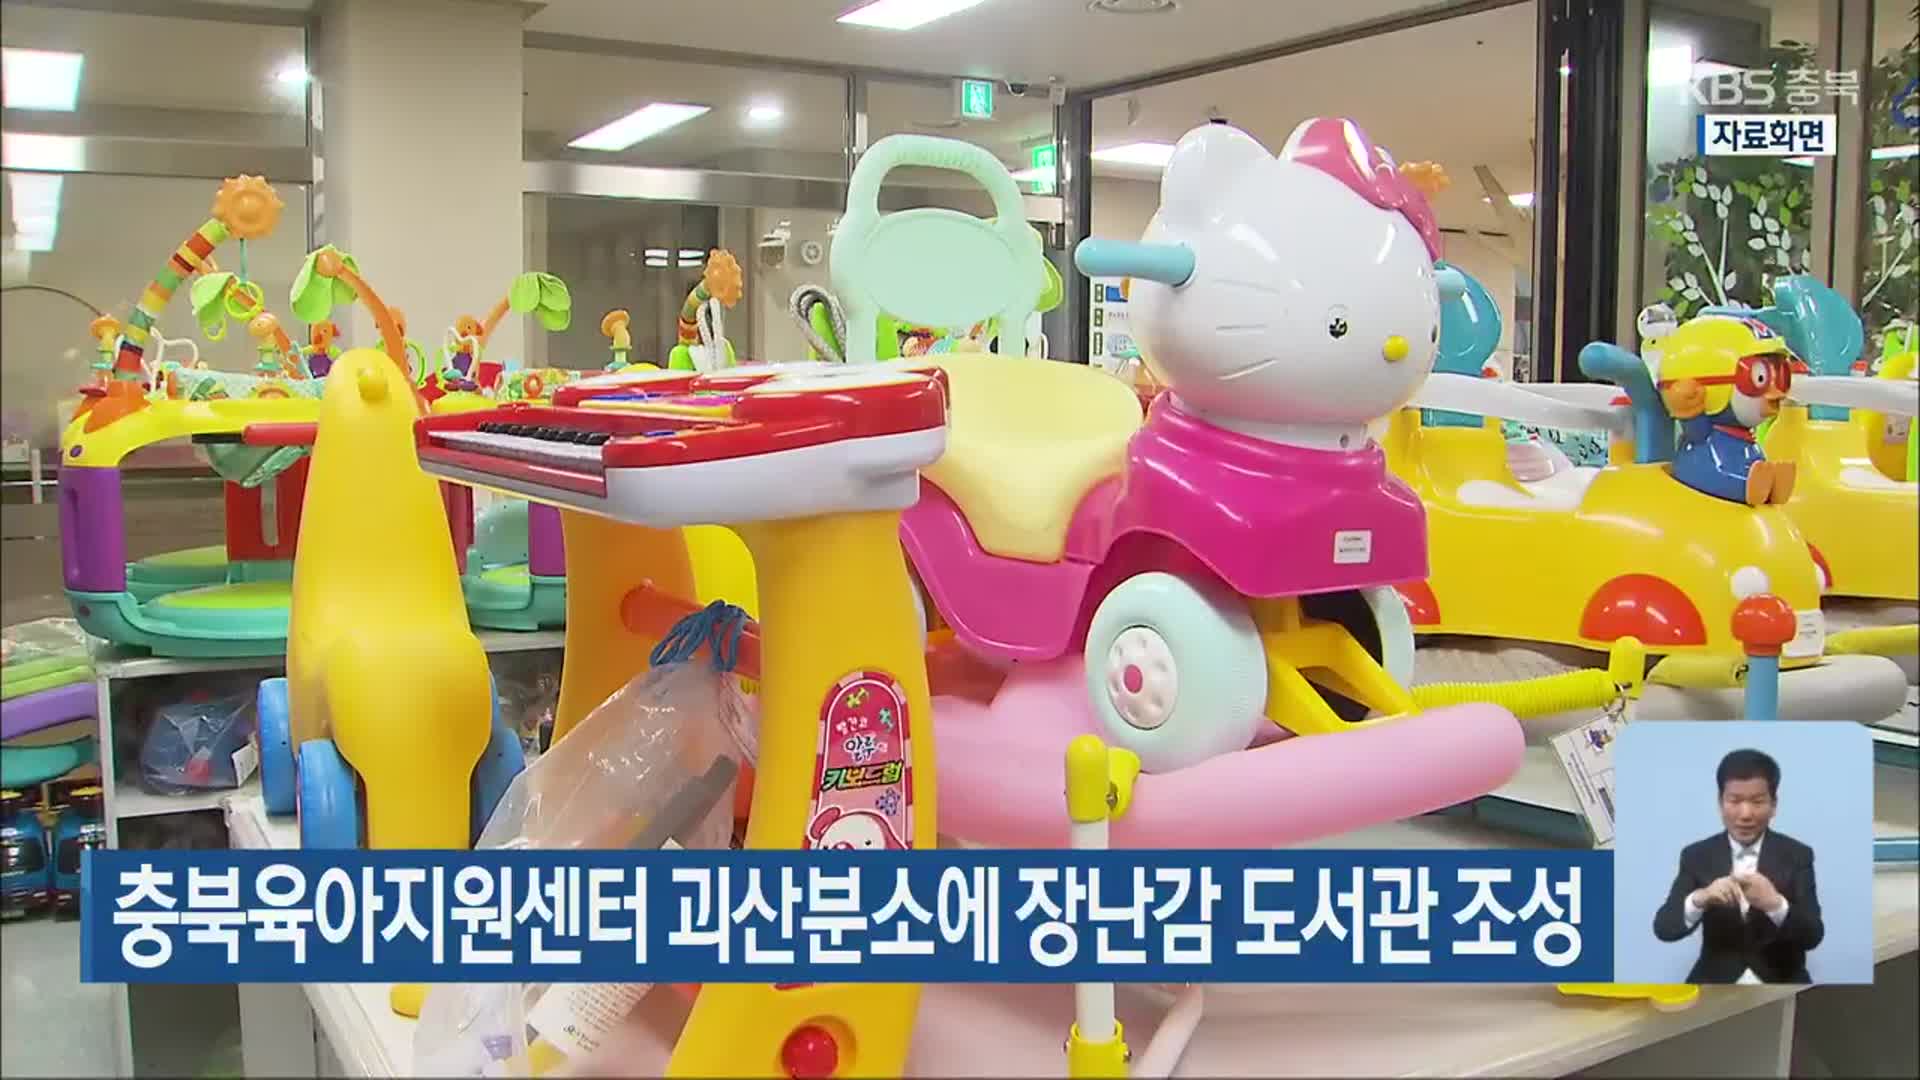 충북육아지원센터 괴산분소에 장난감 도서관 조성